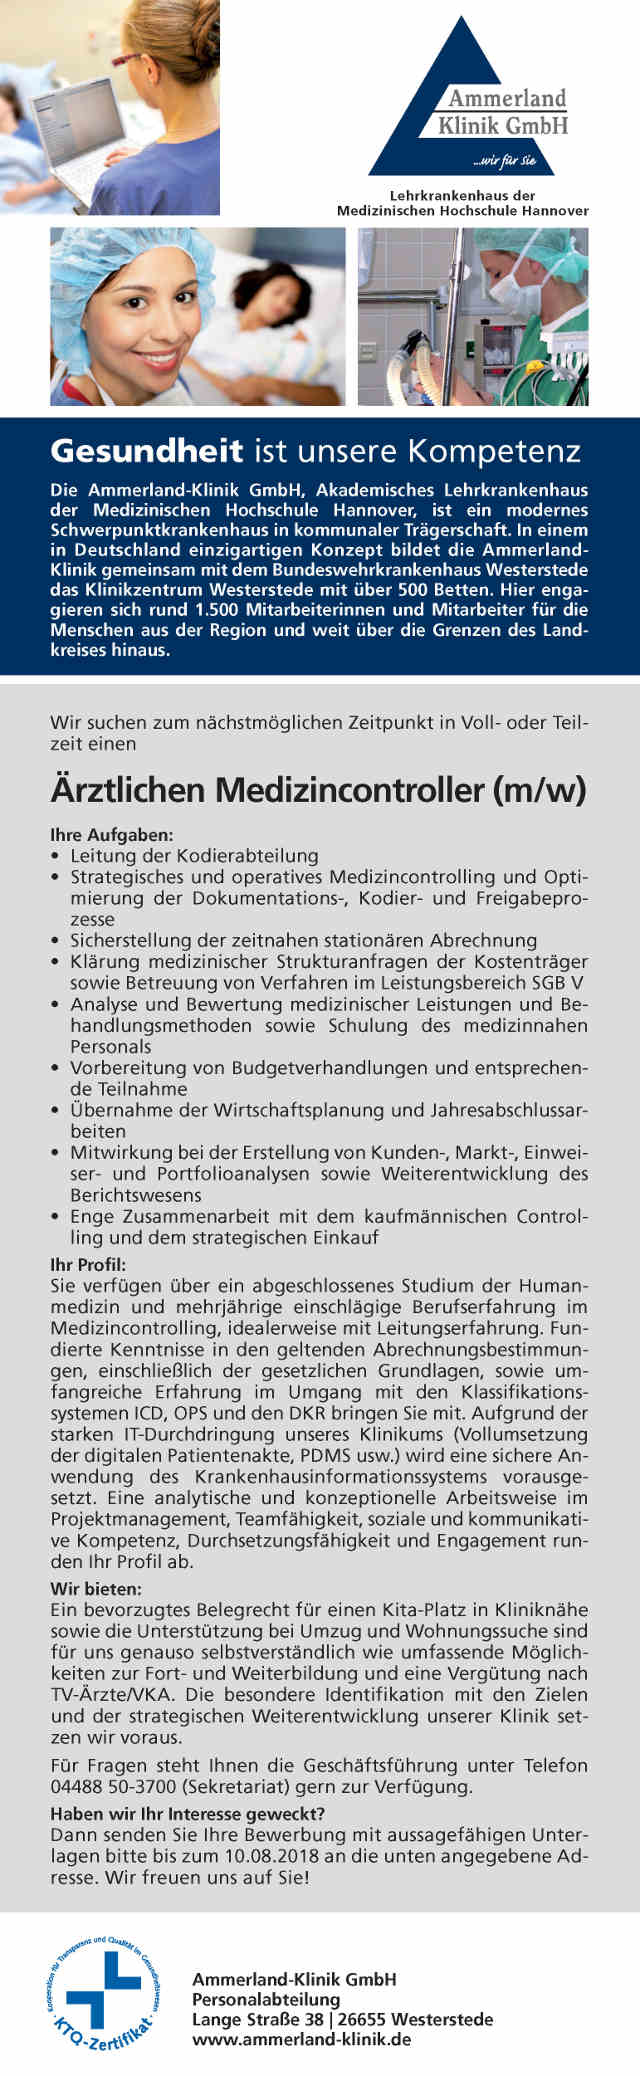 Ammerland-Klinik GmbH Westerstede: Ärztlicher Medizincontroller (m/w)